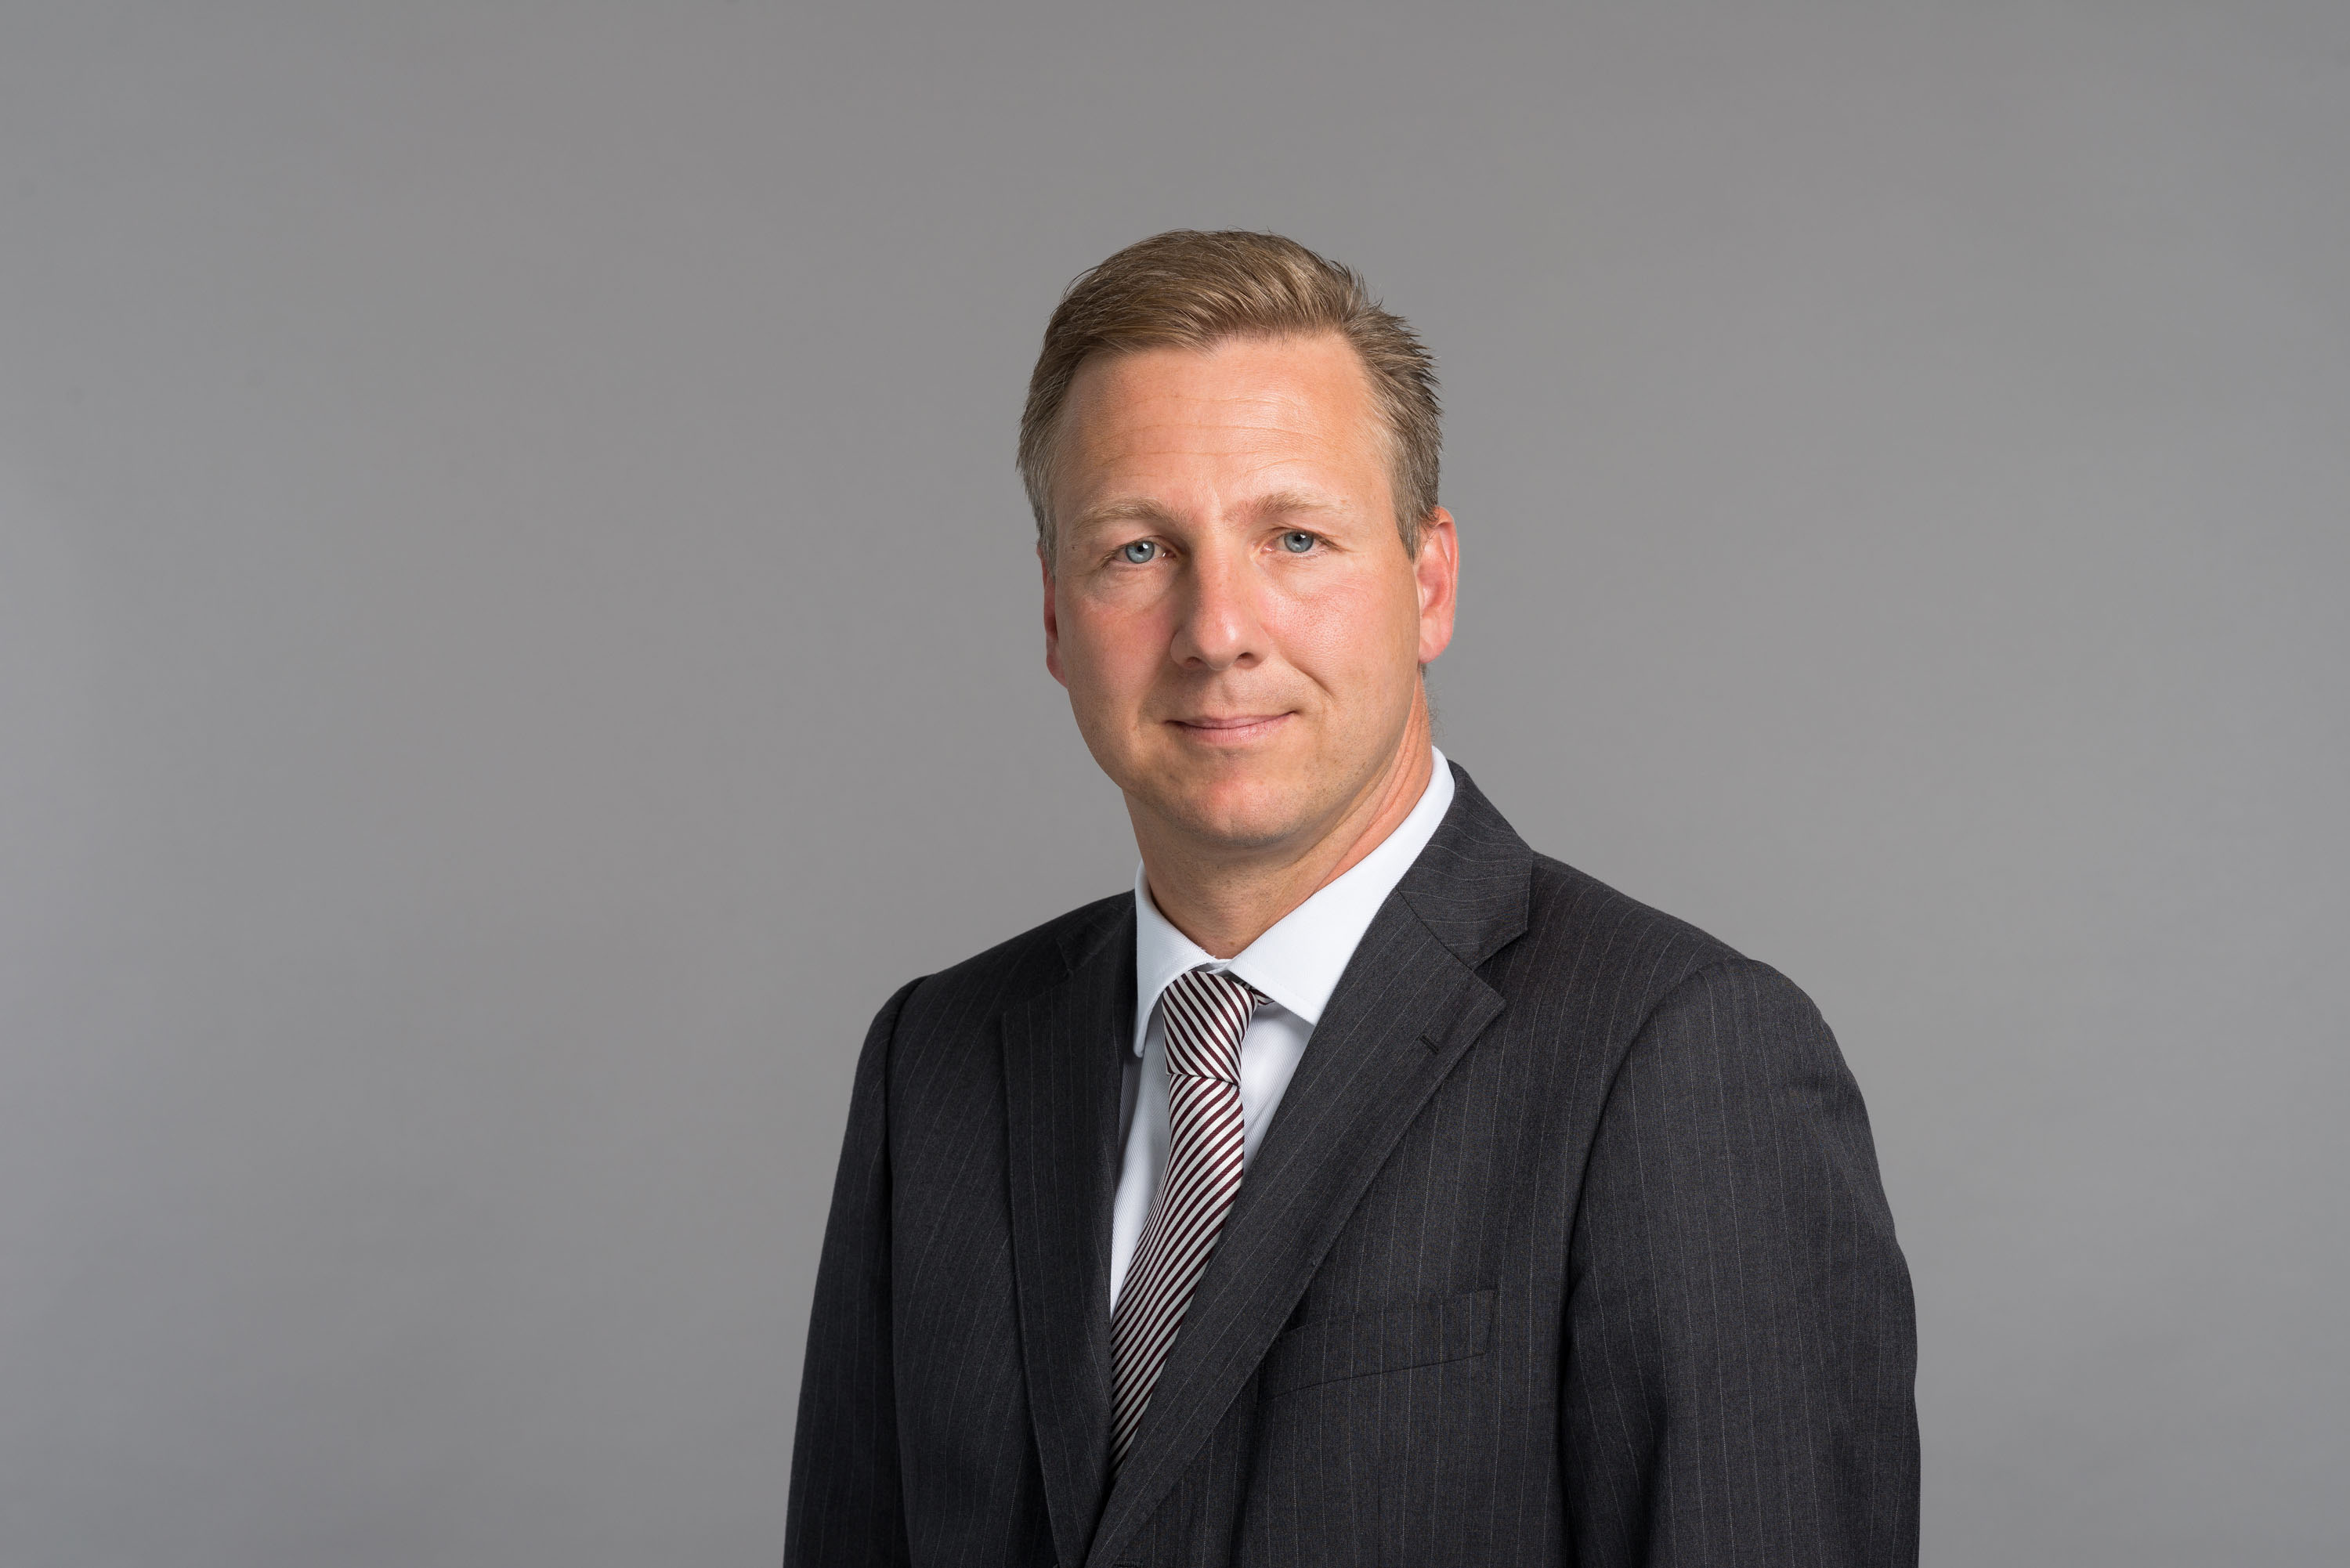 Vertriebschef der Allianz Suisse wird CEO von Helvetia Schweiz